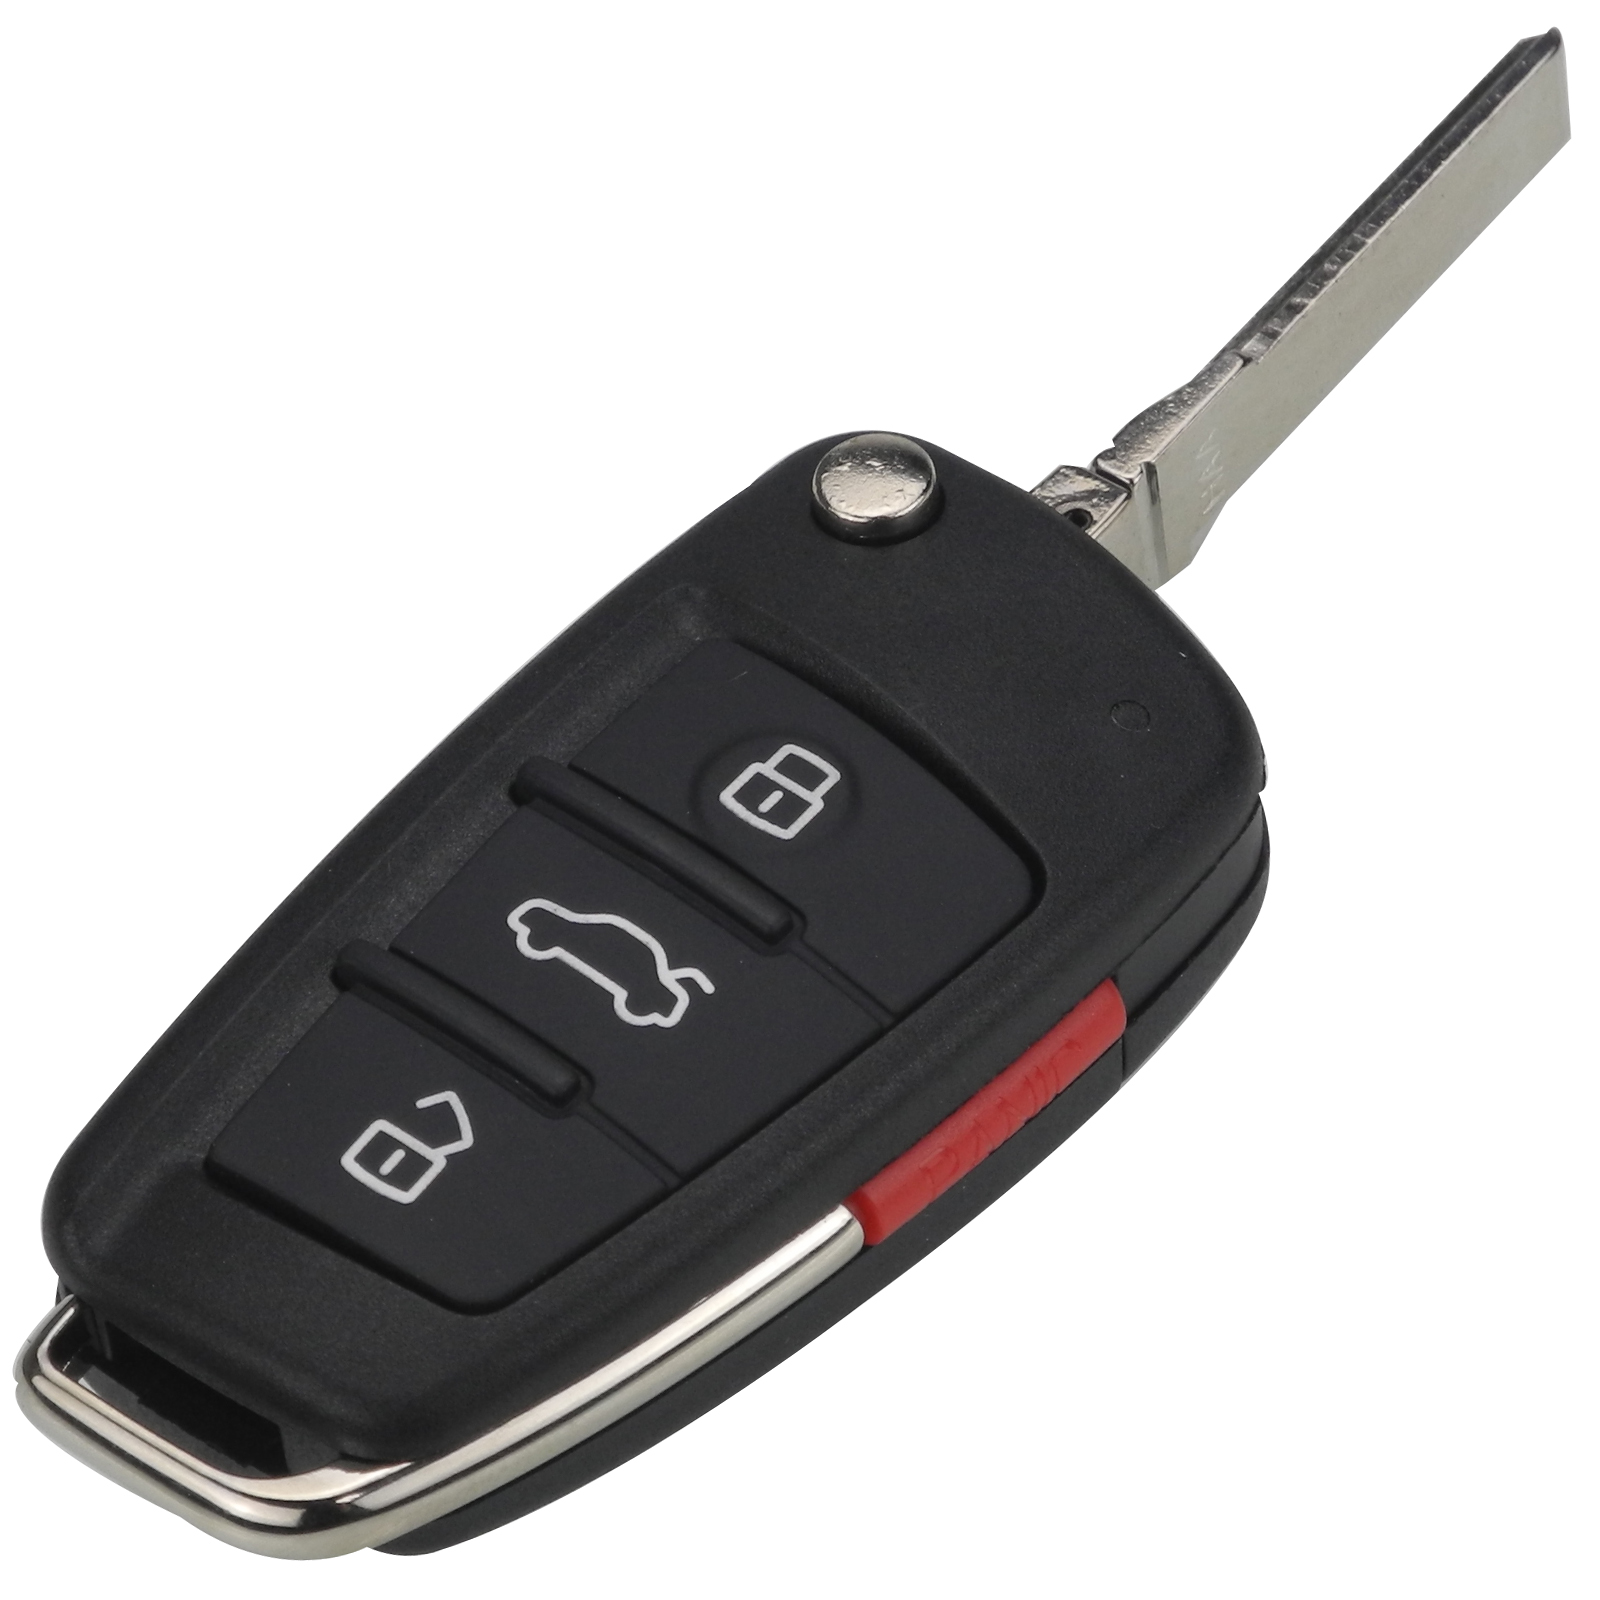 LOCKSMITHOBD 10 ШТ./ЛОТ Автомобіль, 4 кнопки, складний дистанційний відкидний чохол для ключів від автомобіля, брелок для Audi A2 A3 A4 A6 A6L A8 Q7 TT, заміна брелока OEM